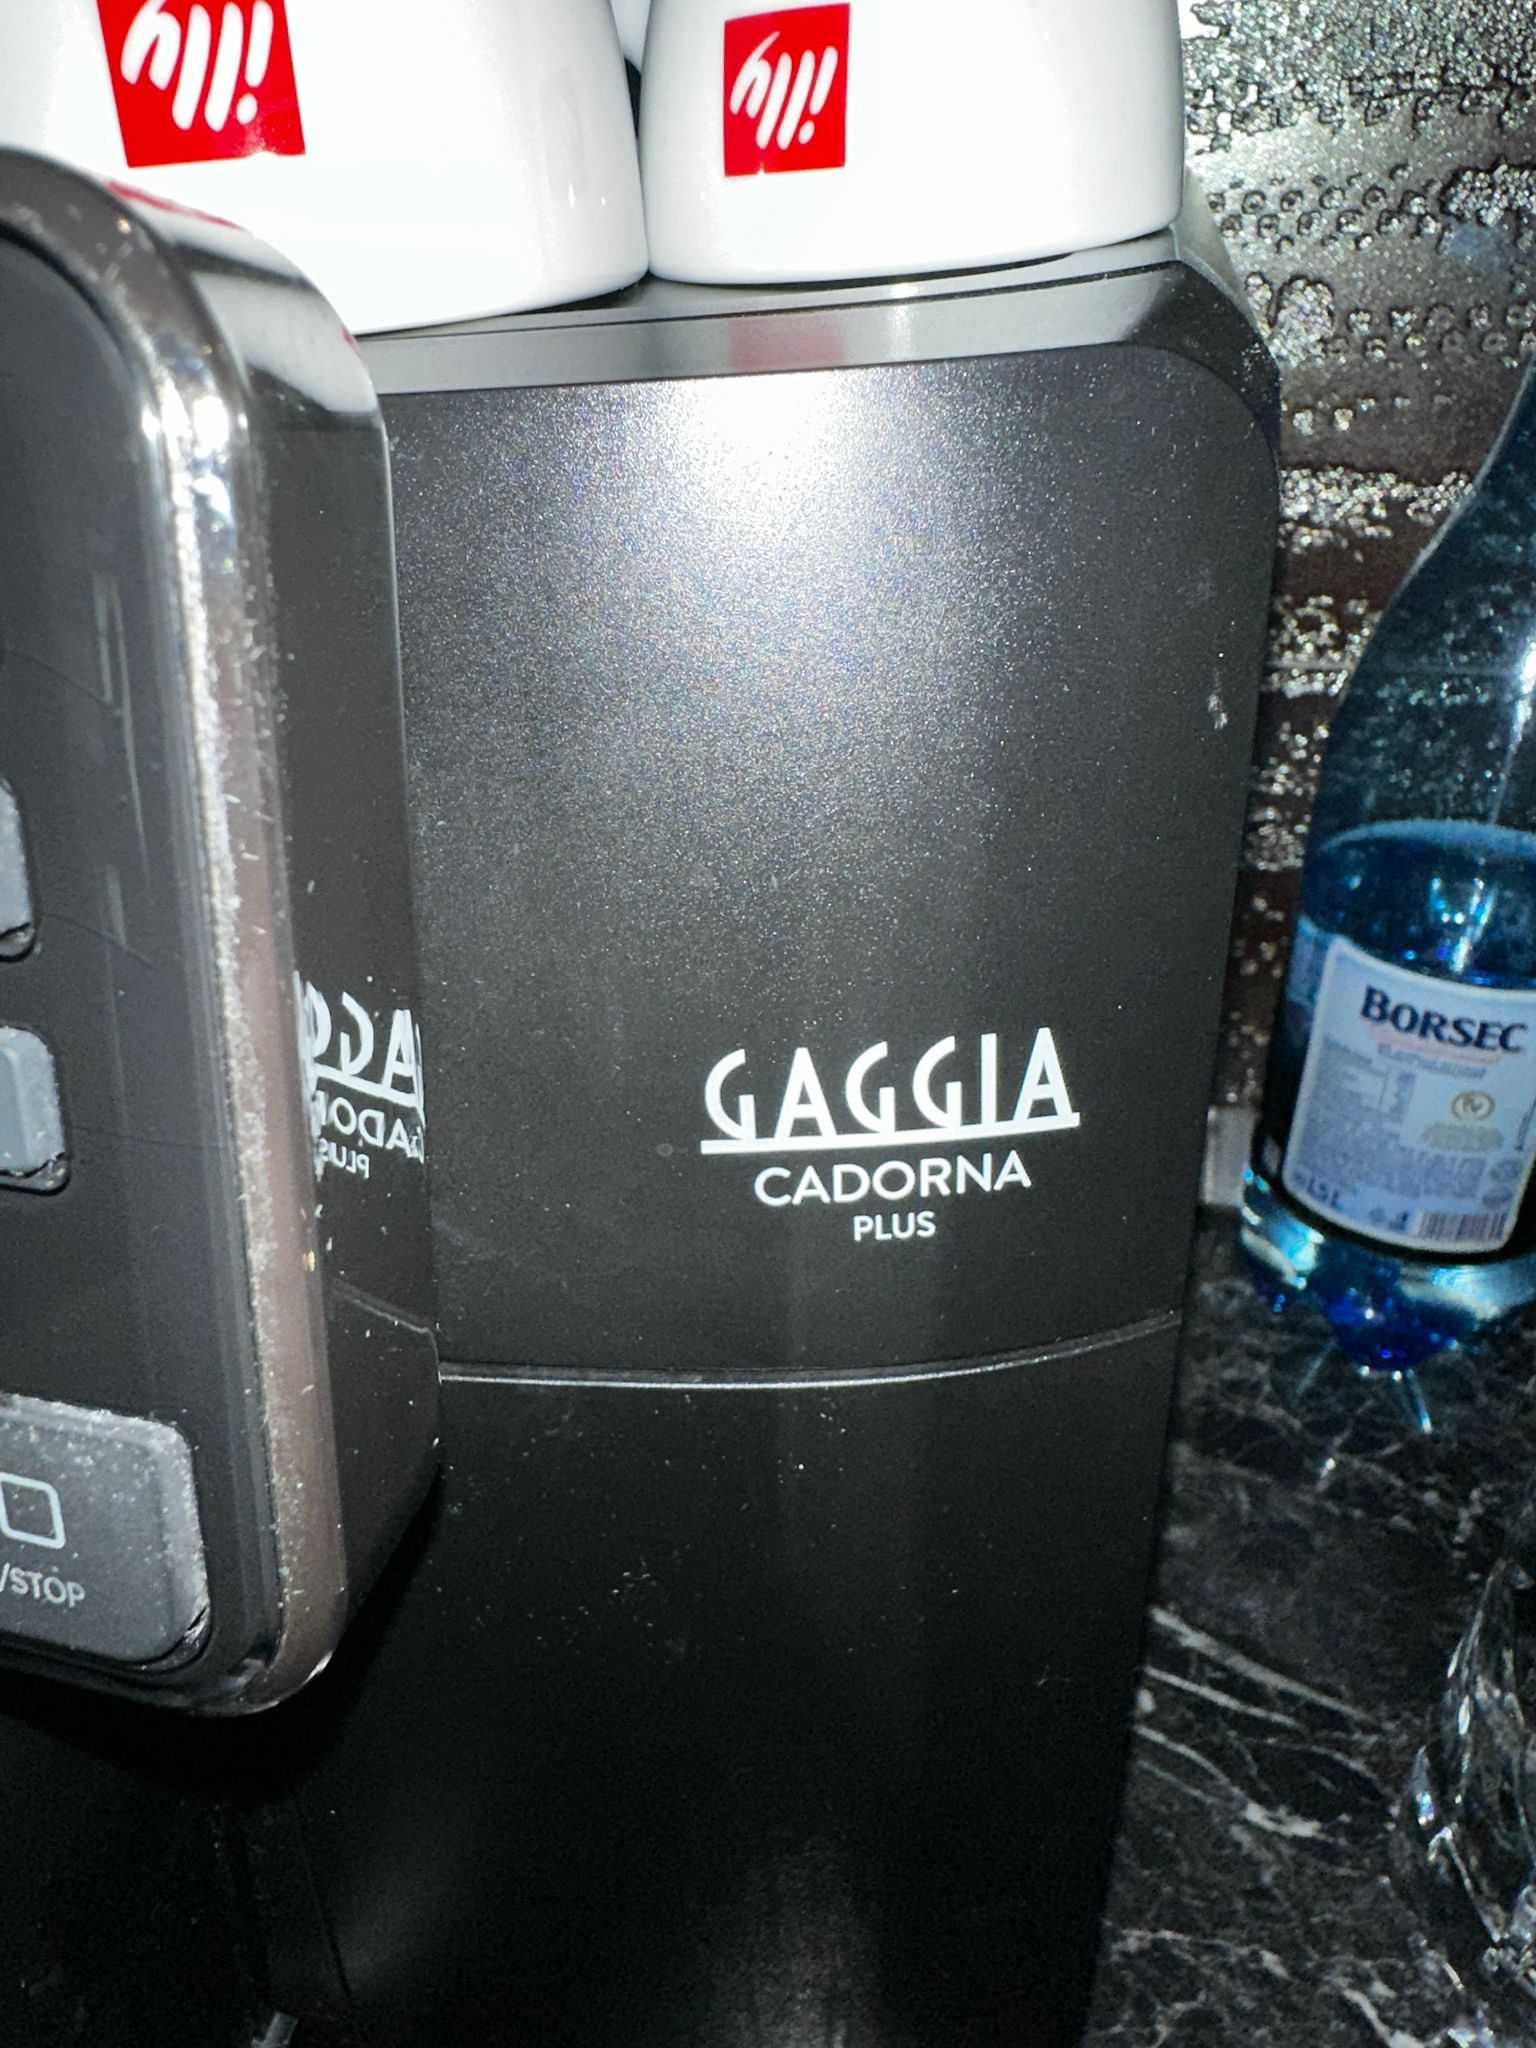 Expressor de cafea Gaggia cadorna plus negru.